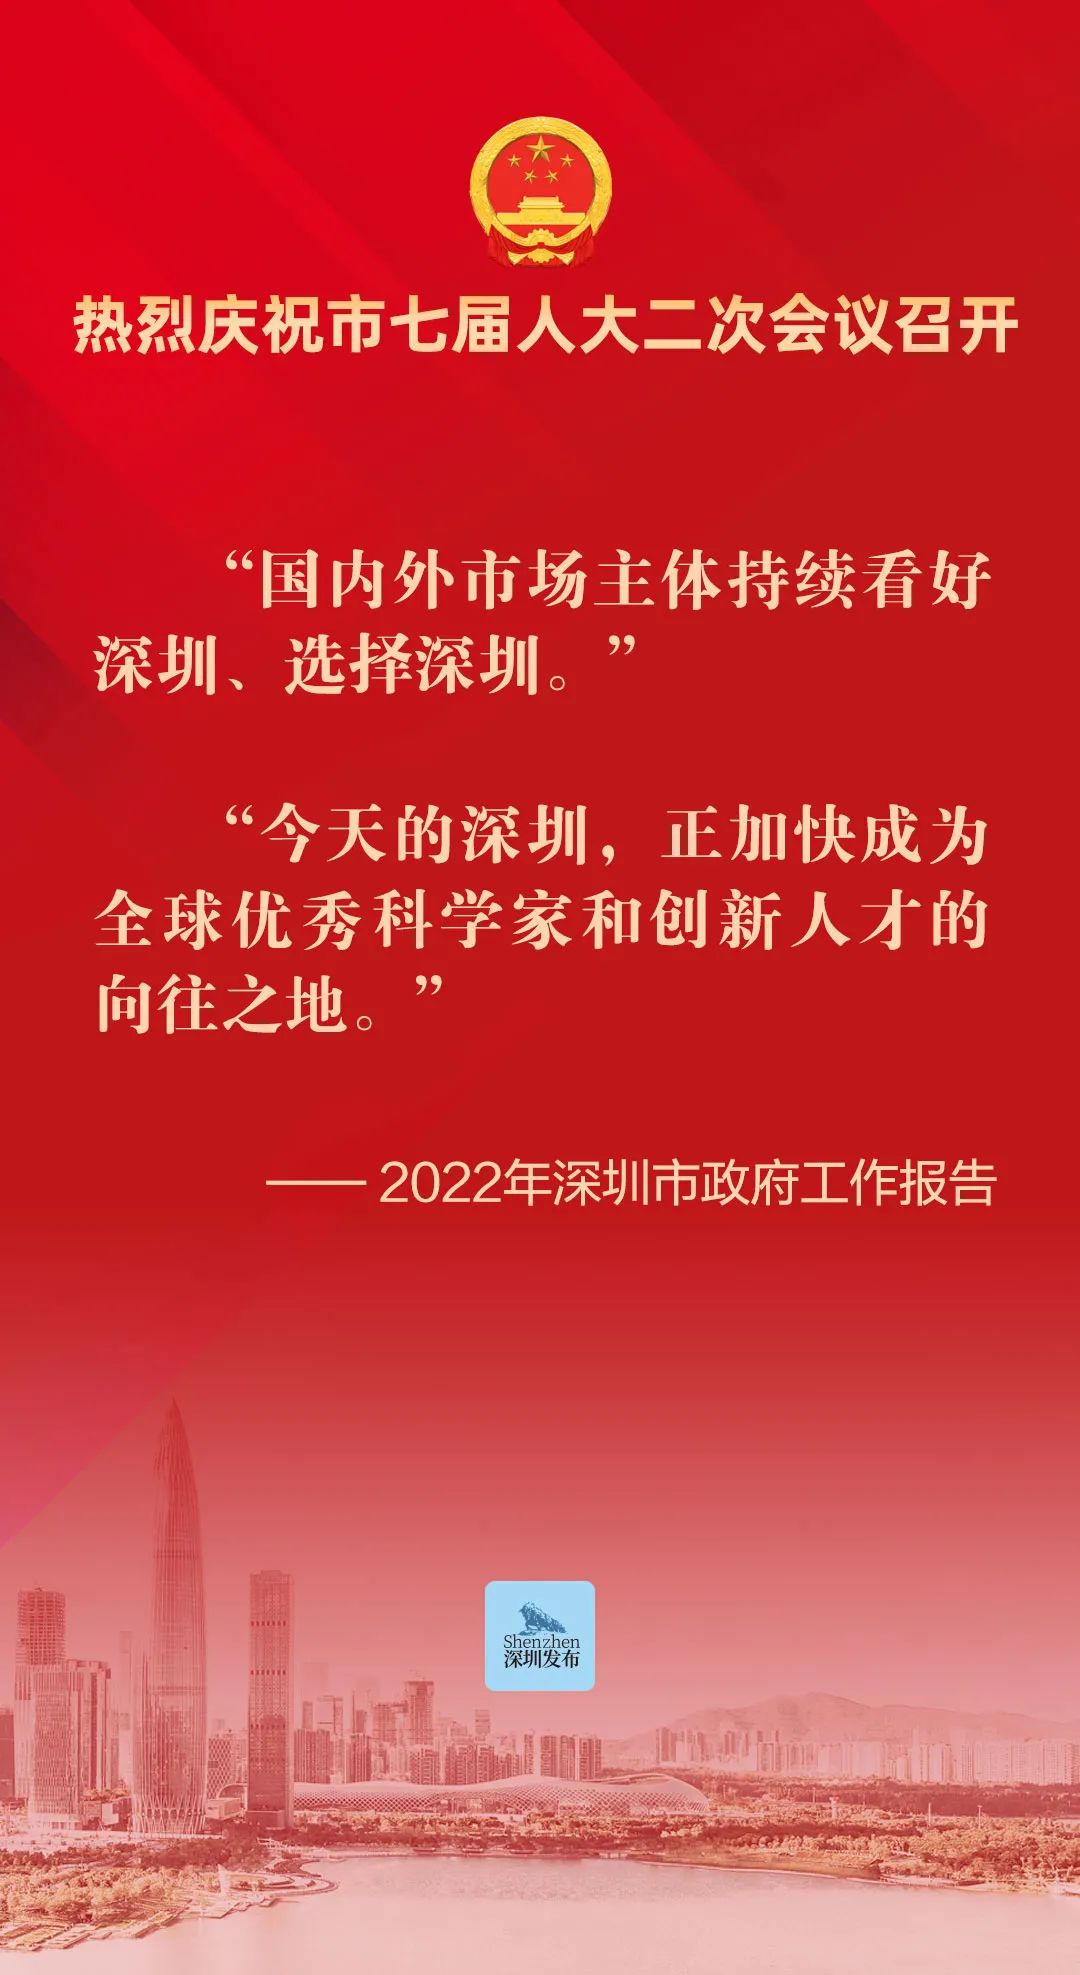 市七届人大二次会议隆重开幕！今年深圳GDP增长预期目标为6%左右